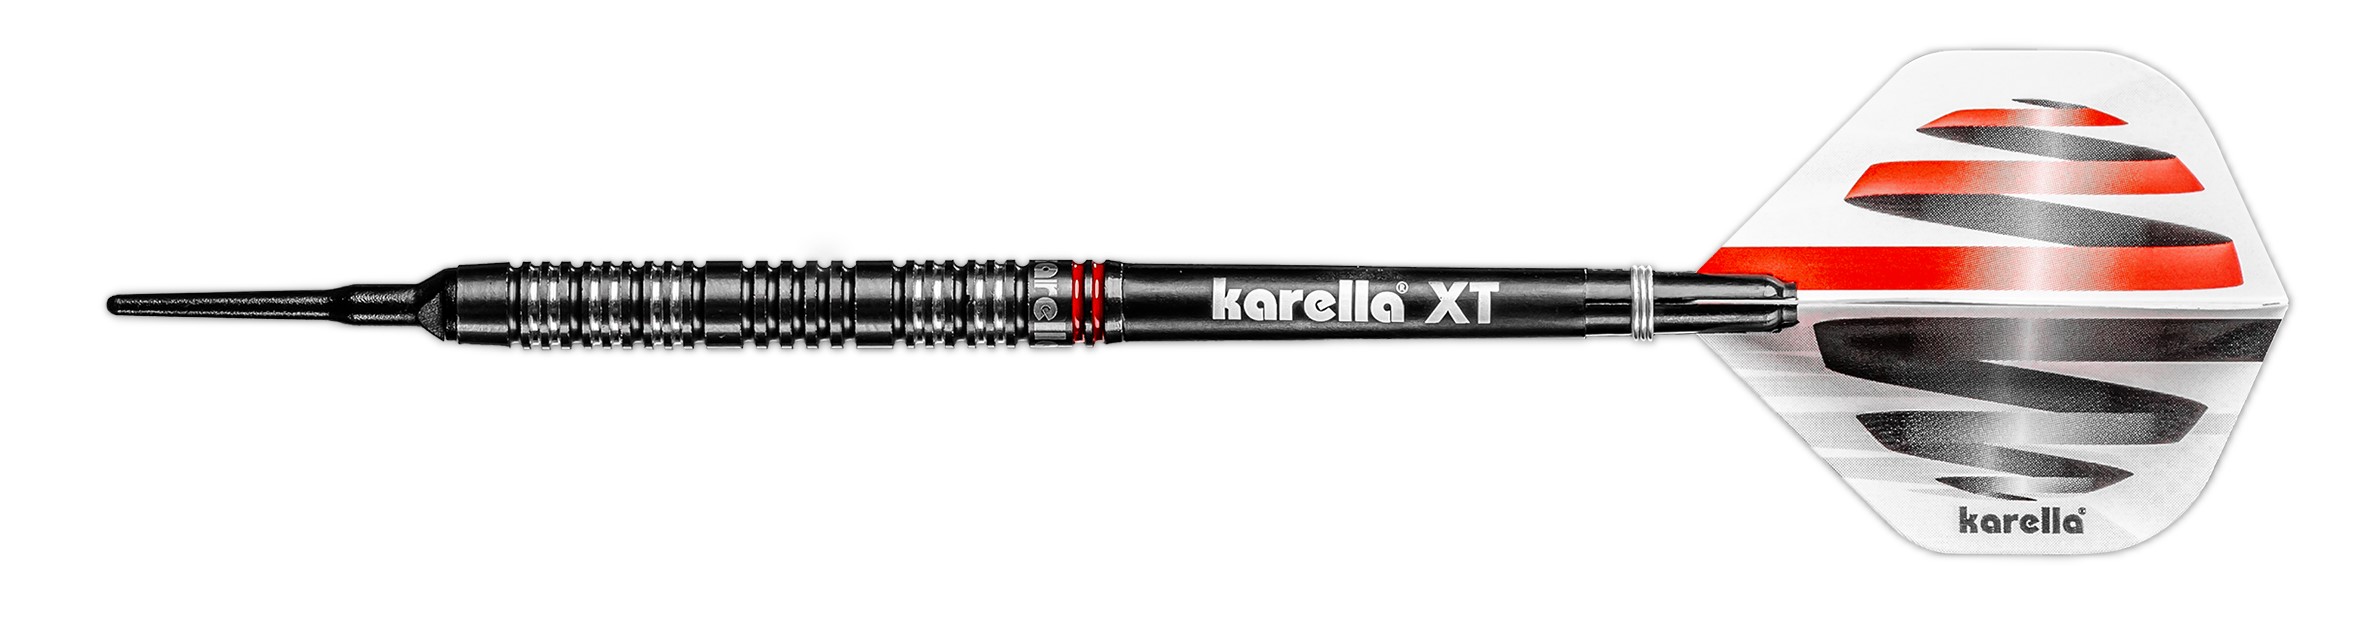 Softdart Karella HiPower black, 90% Tungsten, 18g or 20g